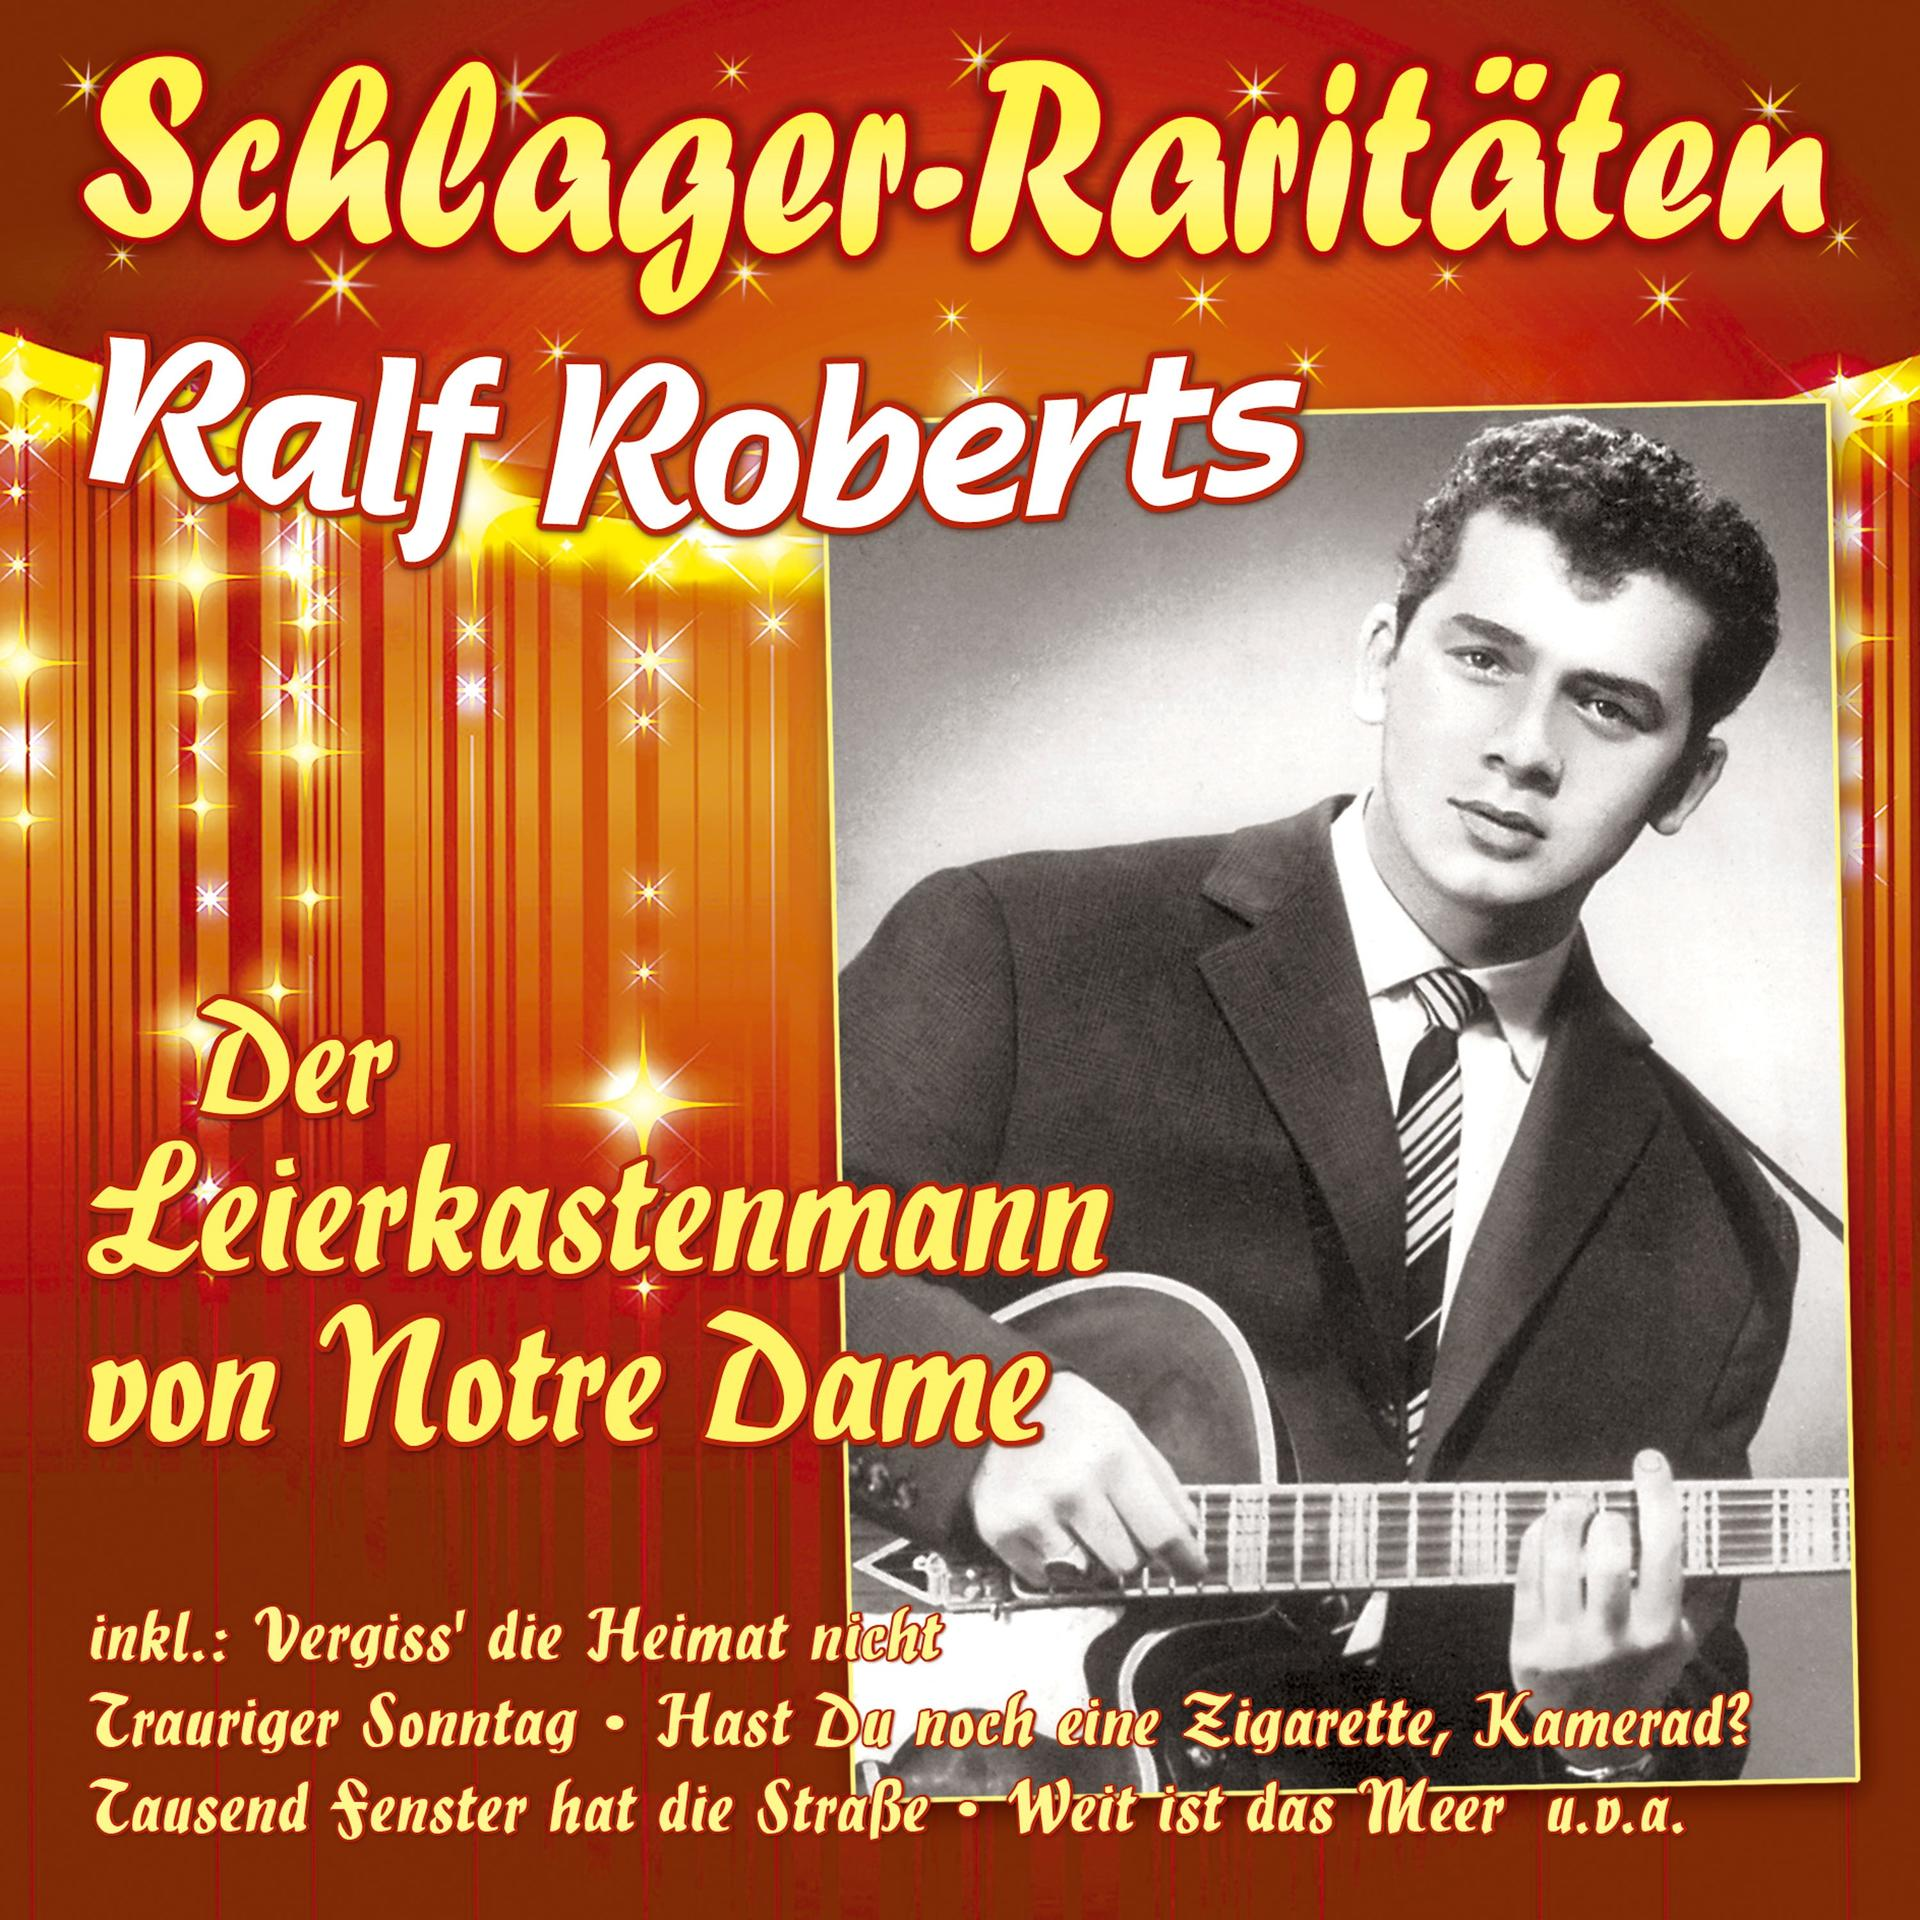 - Der Dame-Schlager-Rari Roberts Leierkastenmann (CD) Von Notre Ralf -